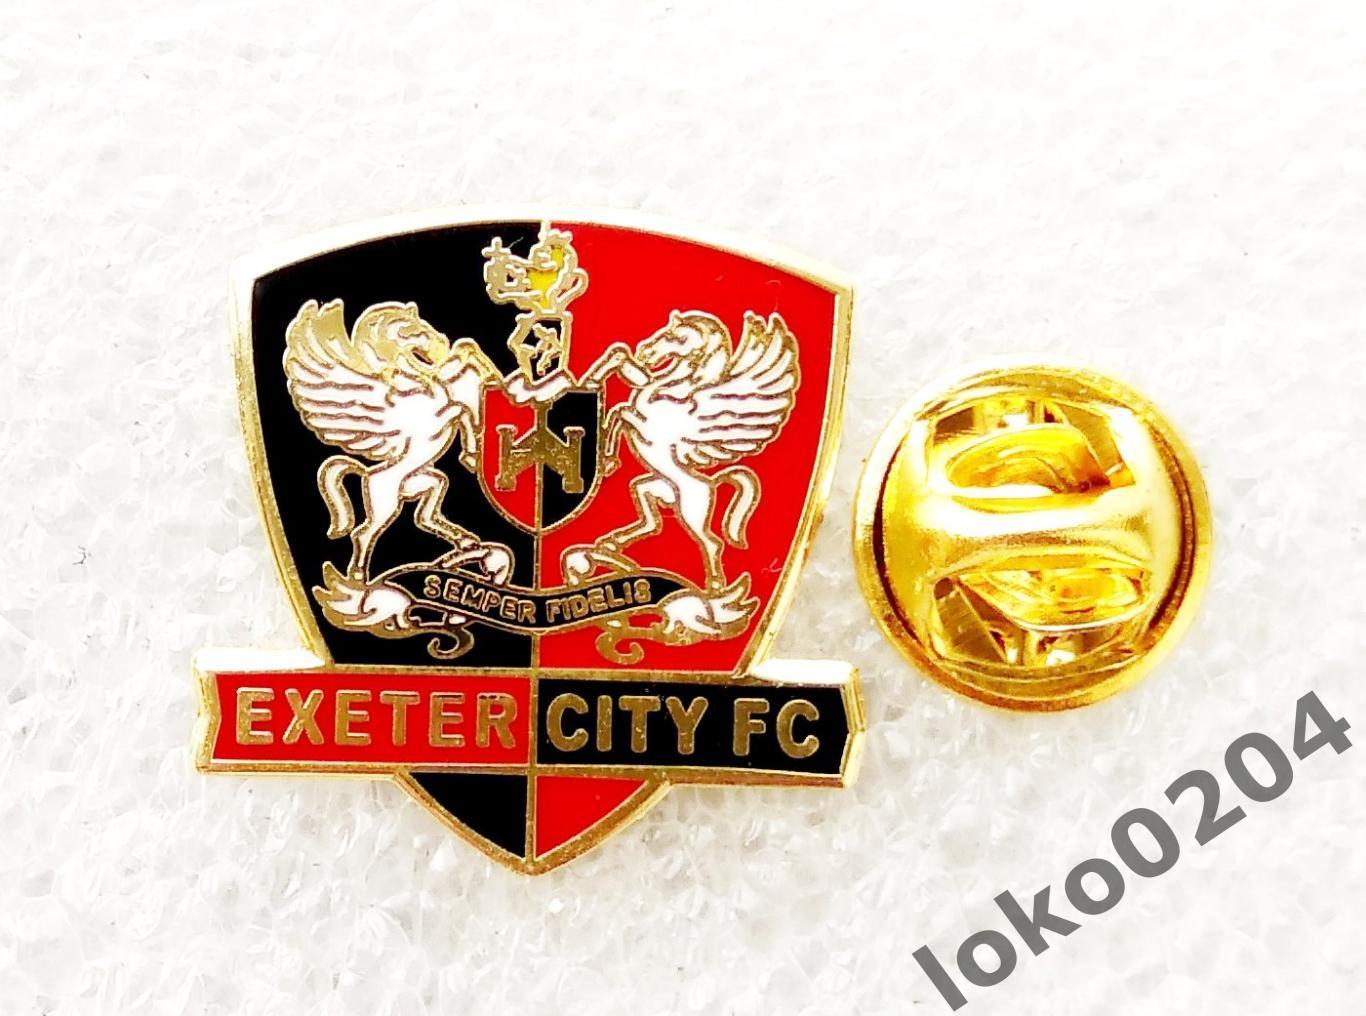 Эксетер Сити ФК - Exeter City FC - АНГЛИЯ (21х21 мм).